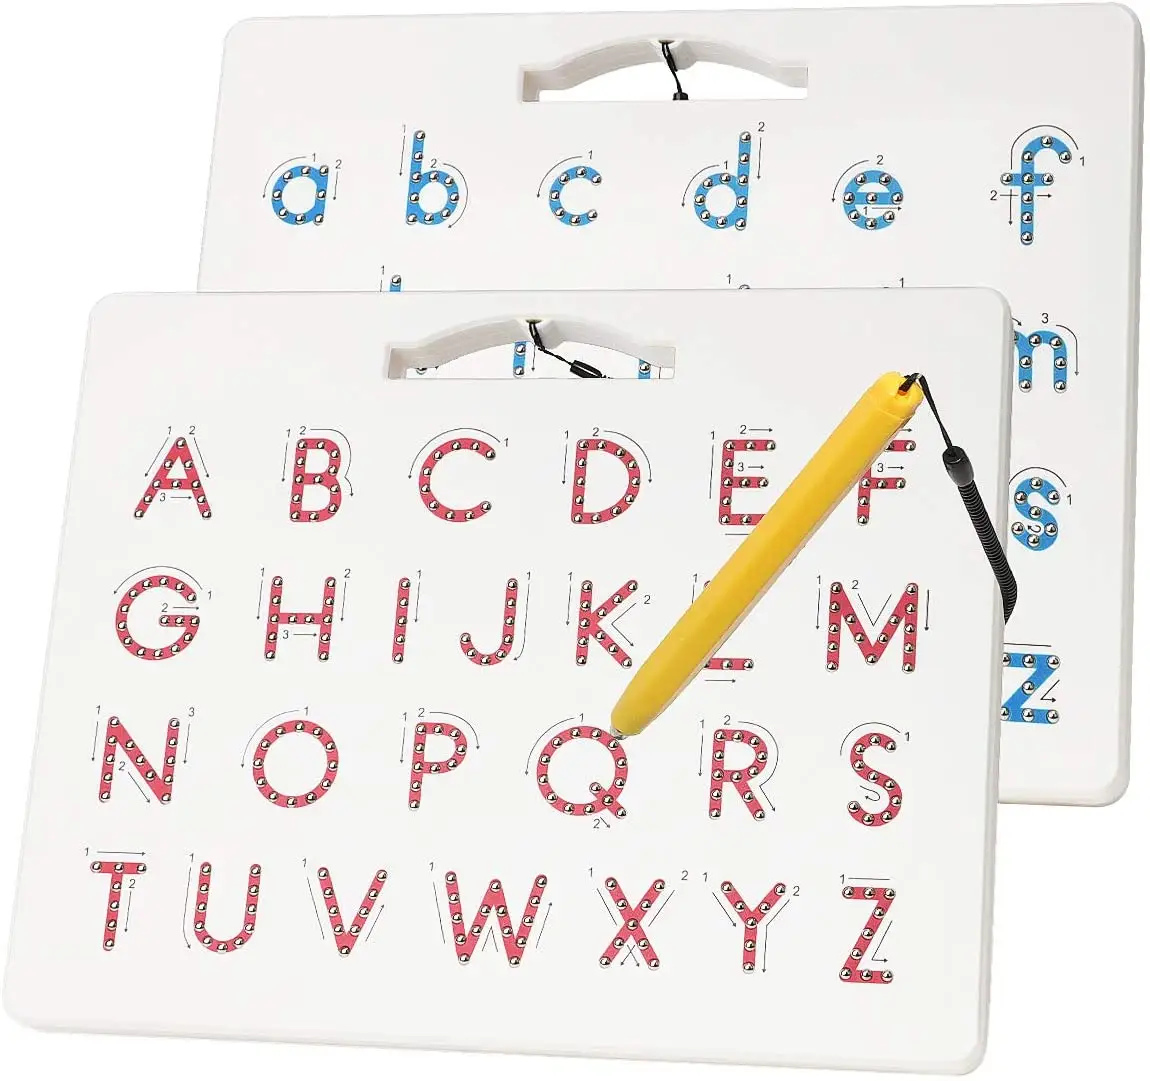 Dubbelzijdig Magnetische Brief Board - 2 In 1 Alfabet Magneten Tracing Board Voor Peuters Abc Letters Hoofdletters En Kleine